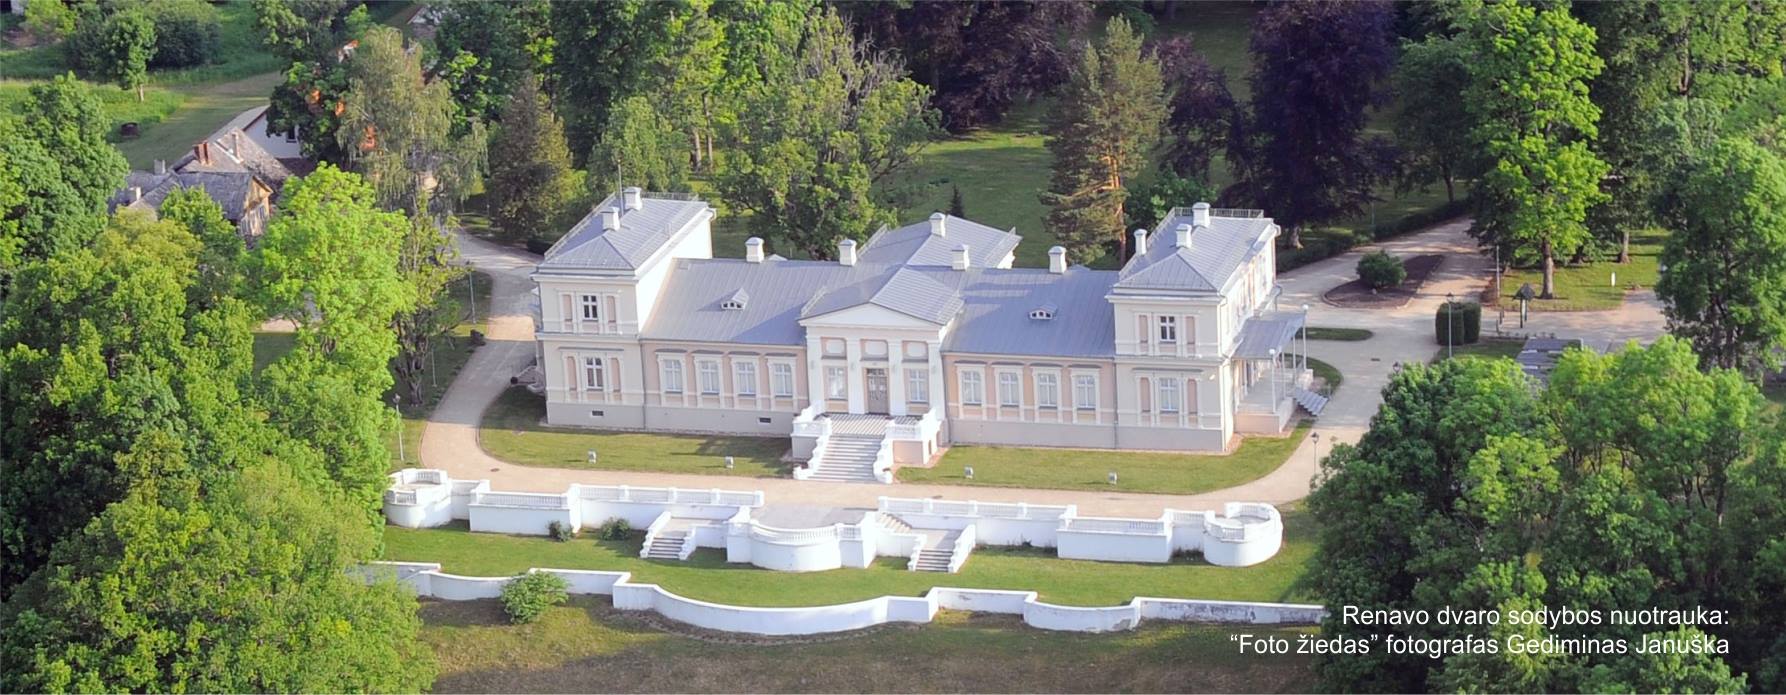 Renavos manor homestead